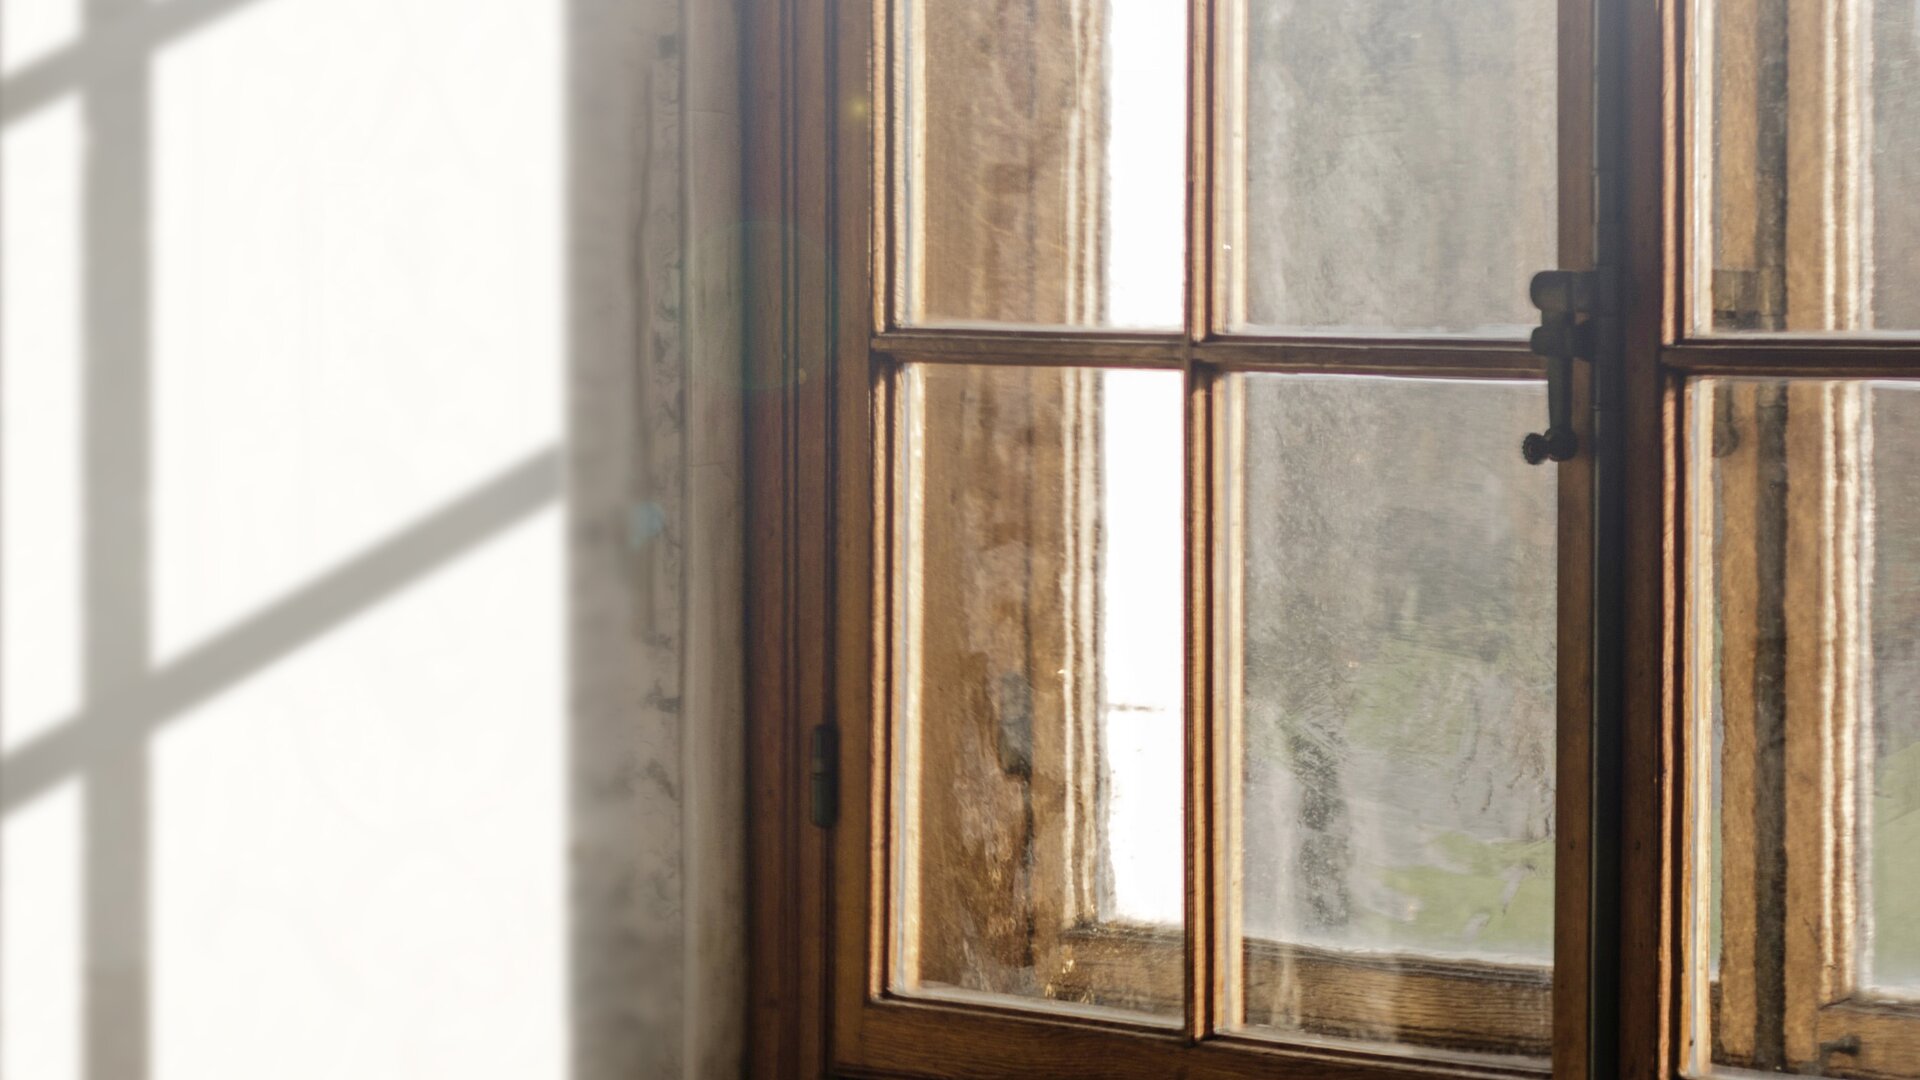 Blick zu einem hölzernen Kastenfenster mit Lichteinfall und Schatten an der Innenwand.